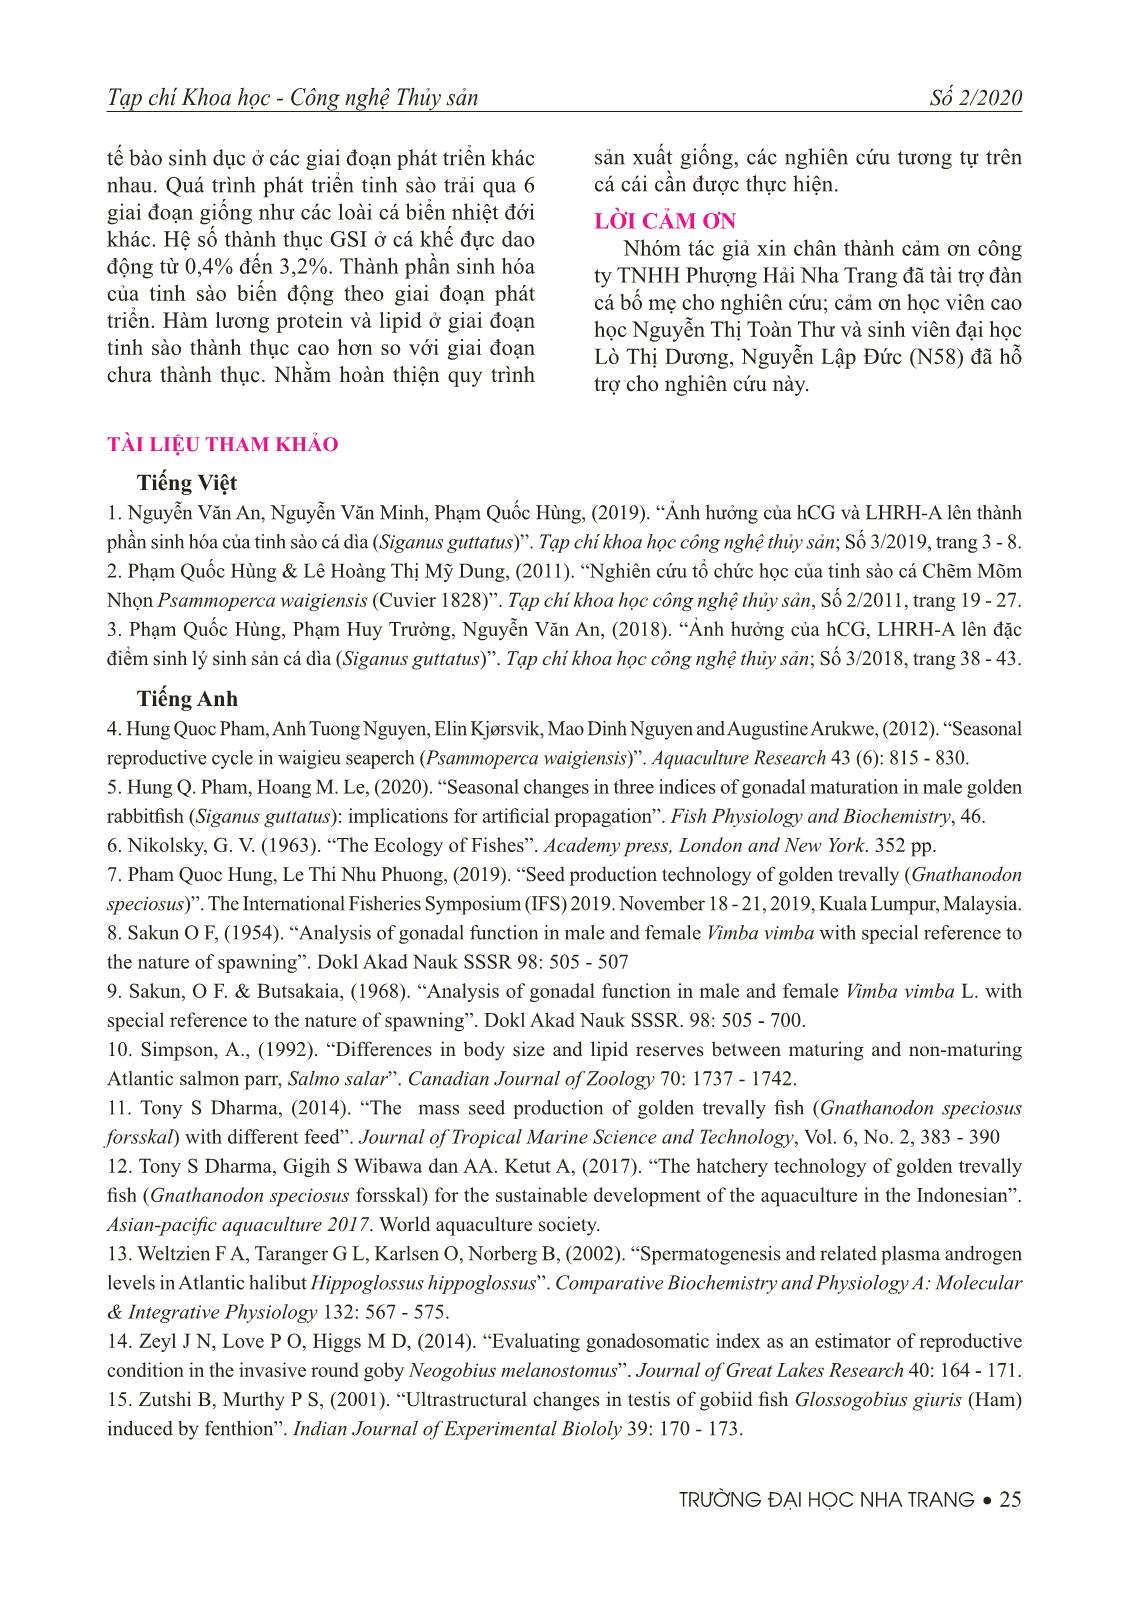 Nghiên cứu đặc điểm sinh học tinh sào cá khế vằn (Gnathanodon speciosus) trang 7